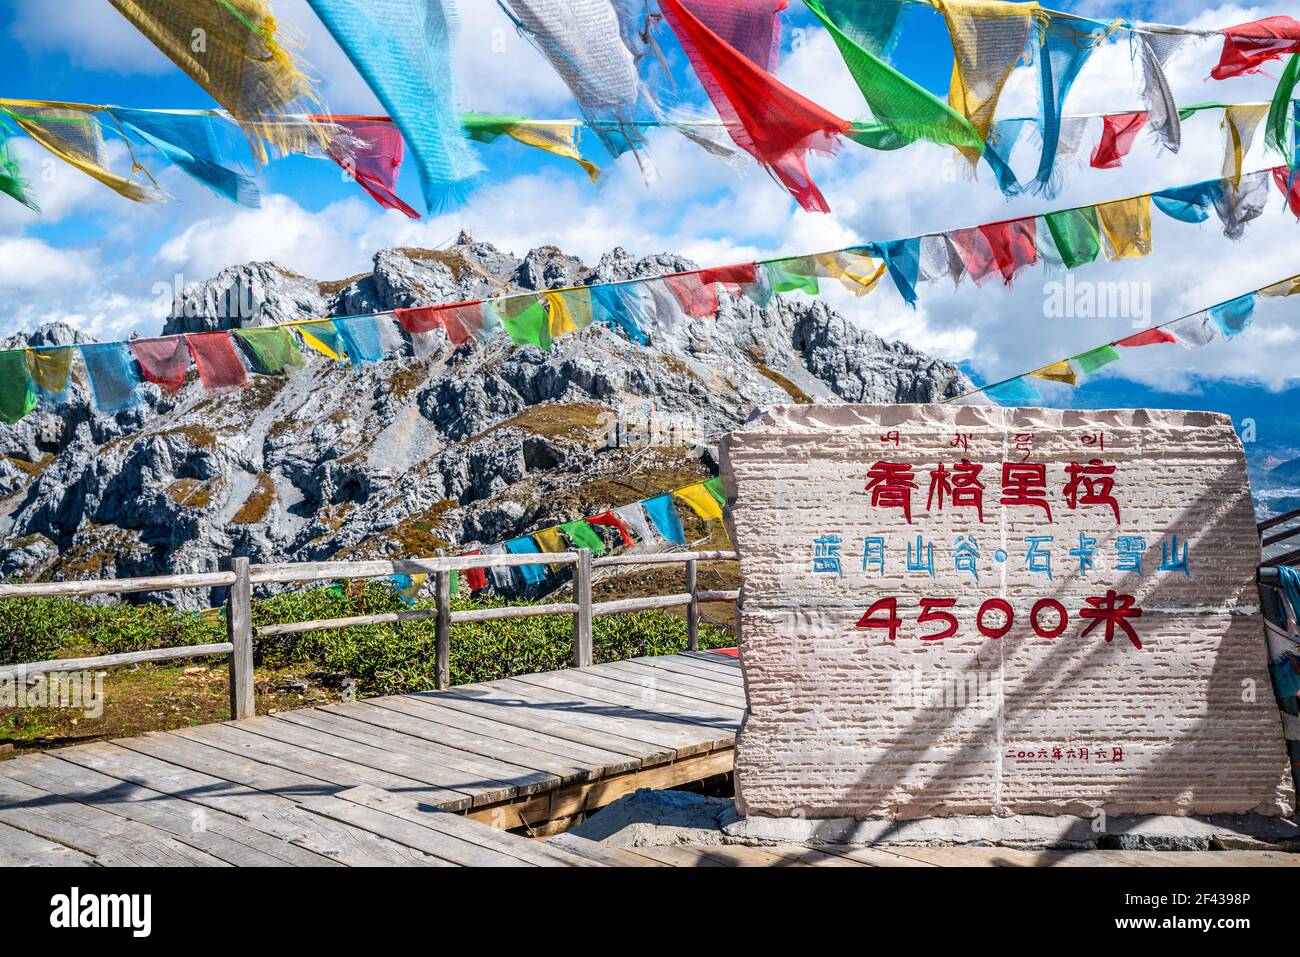 Signe et vue du sommet de la montagne de neige de Shika de 4500m de haut avec drapeaux de prière à Shangri-la Yunnan Chine (traduction : vallée de la lune bleue, neige de Shika m Banque D'Images